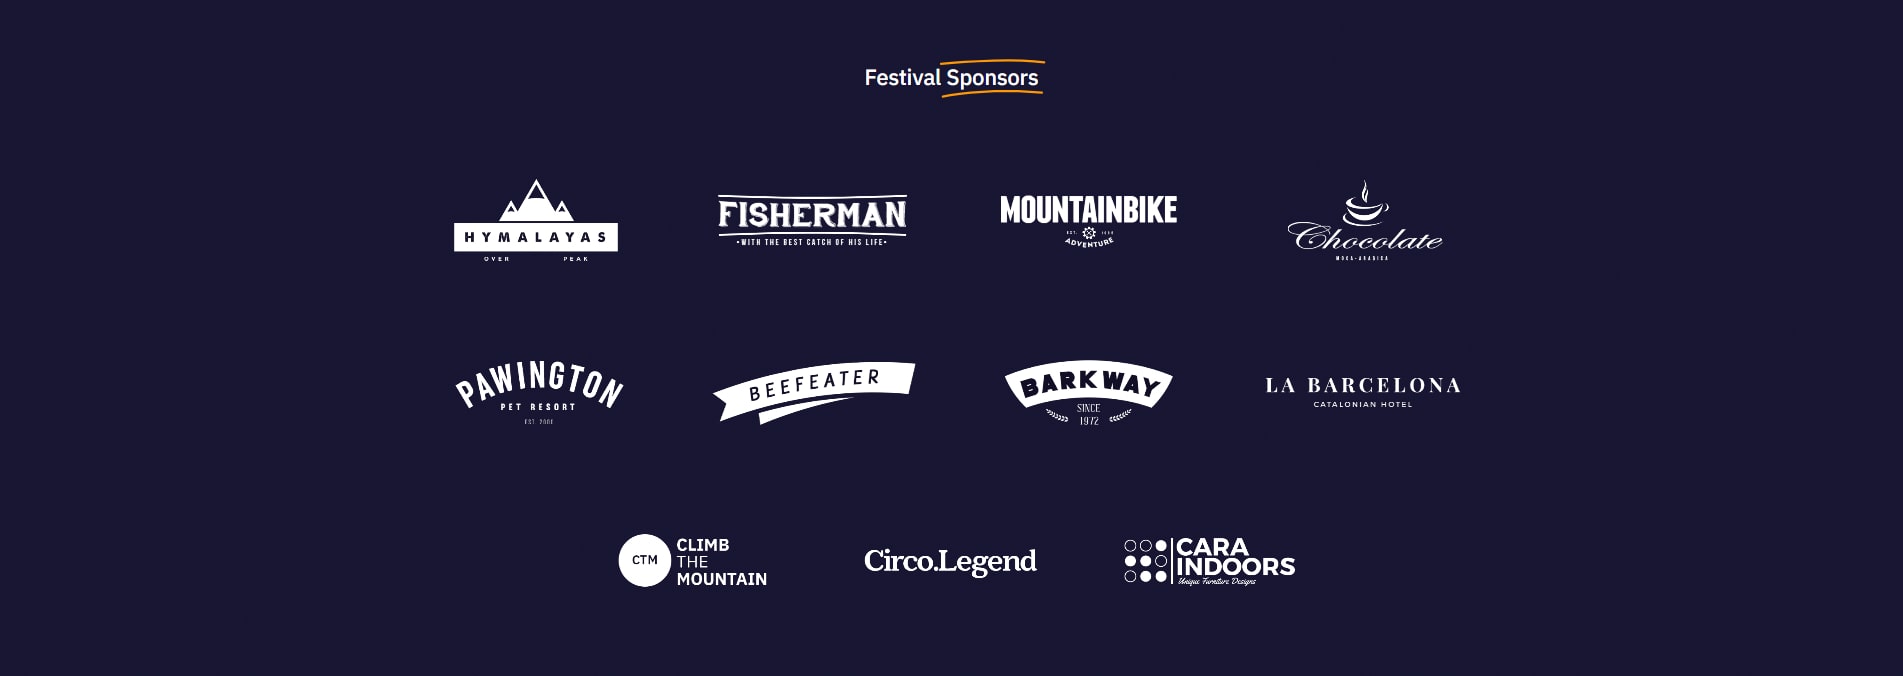 Avada Festival Festival Sponsors